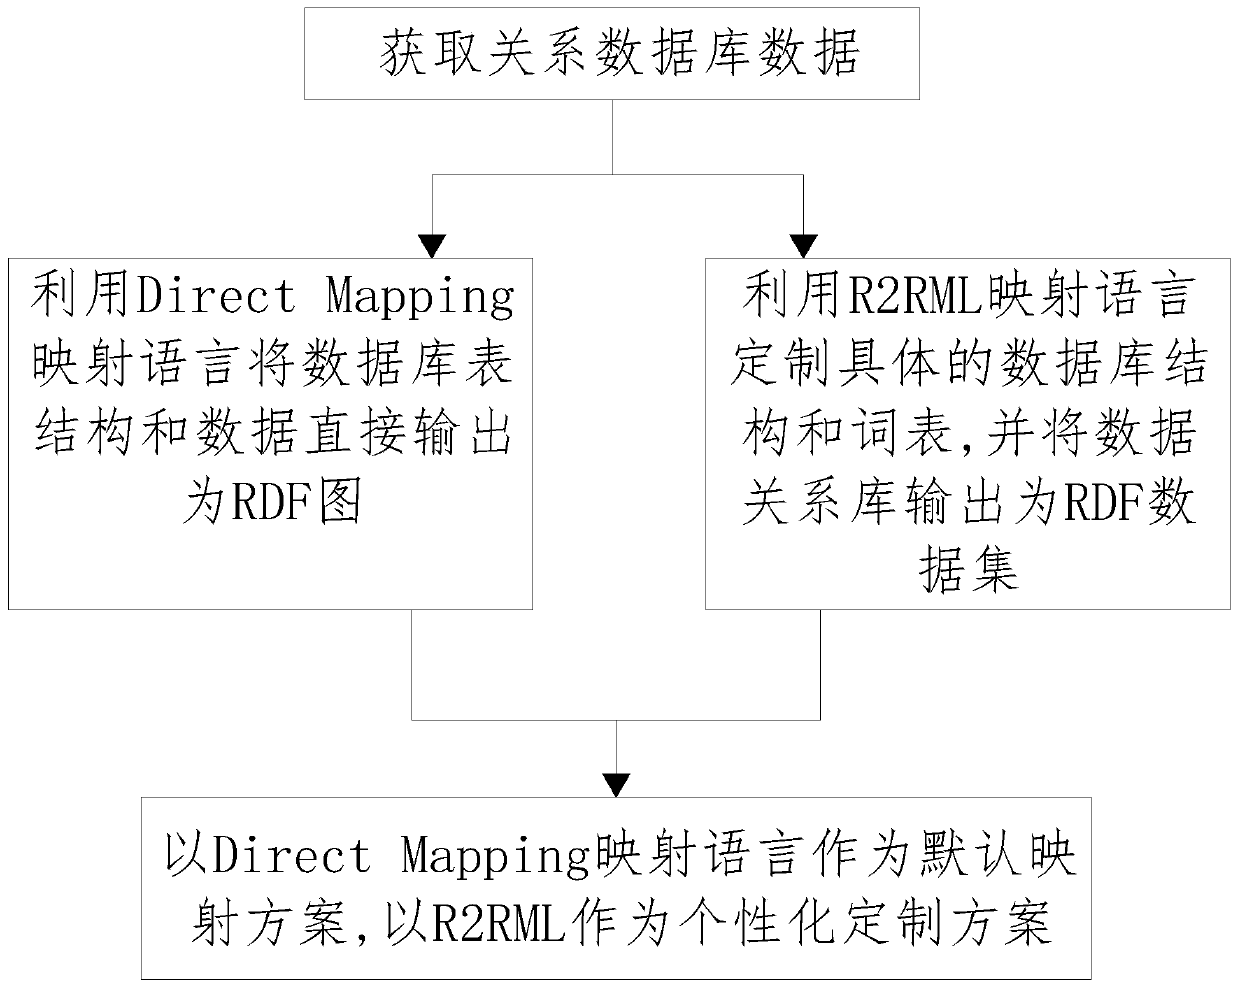 RDF triad-oriented data custom mapping method